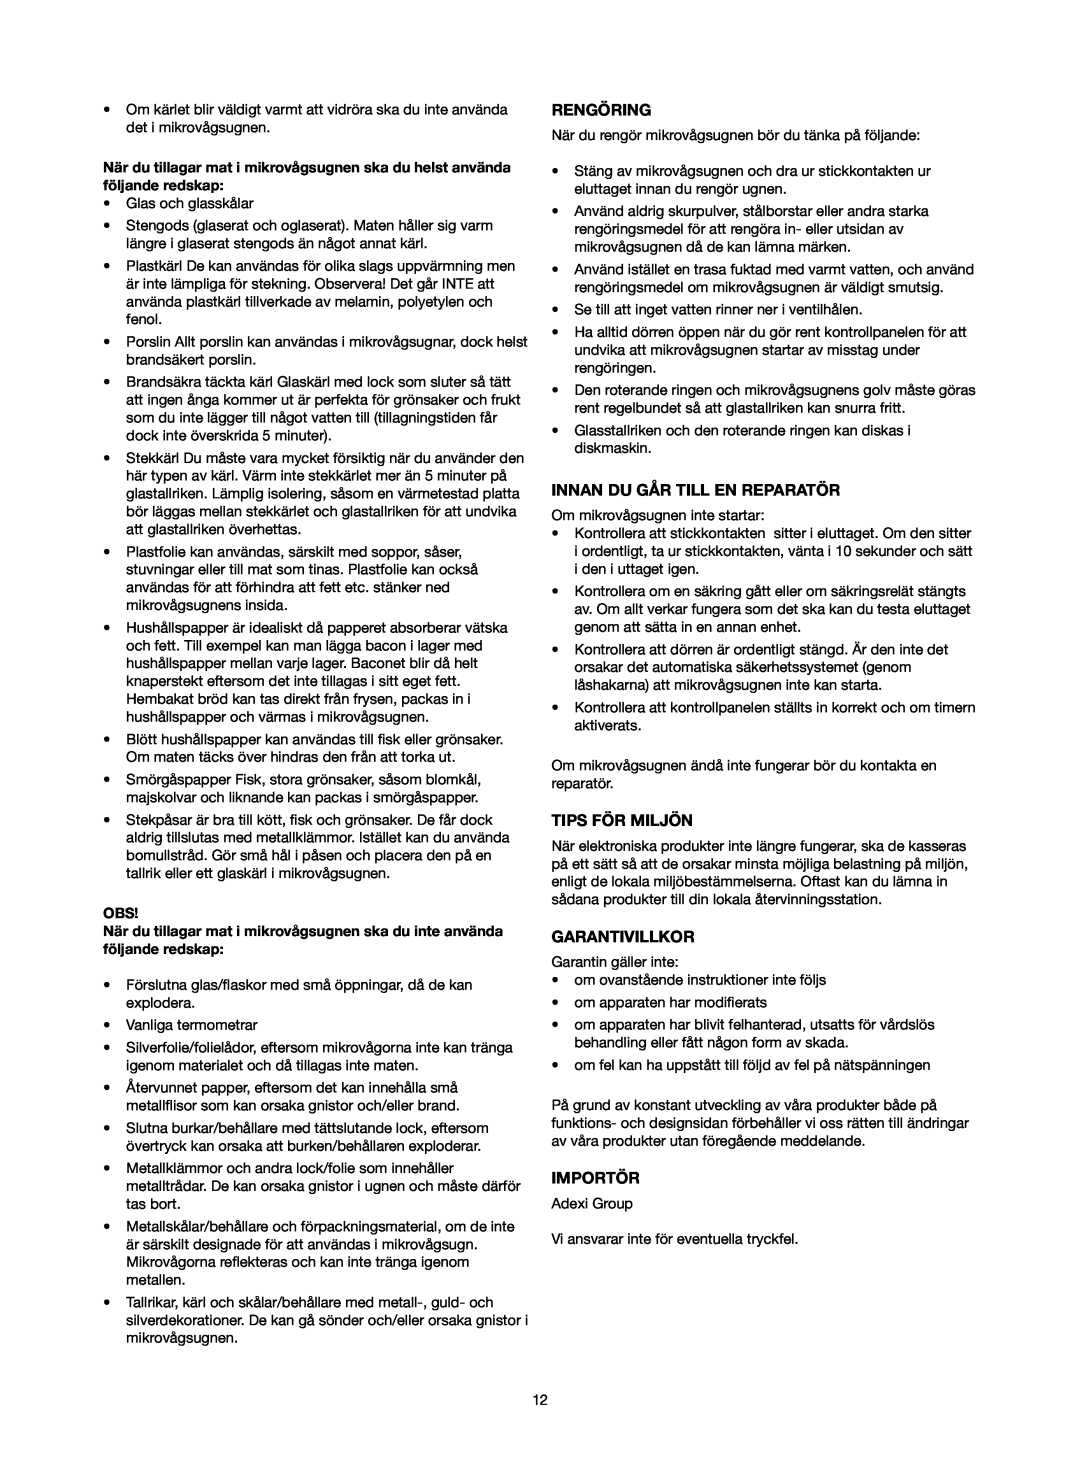 Melissa 753-093 manual Rengöring, Innan Du Går Till En Reparatör, Tips För Miljön, Garantivillkor, Importör 